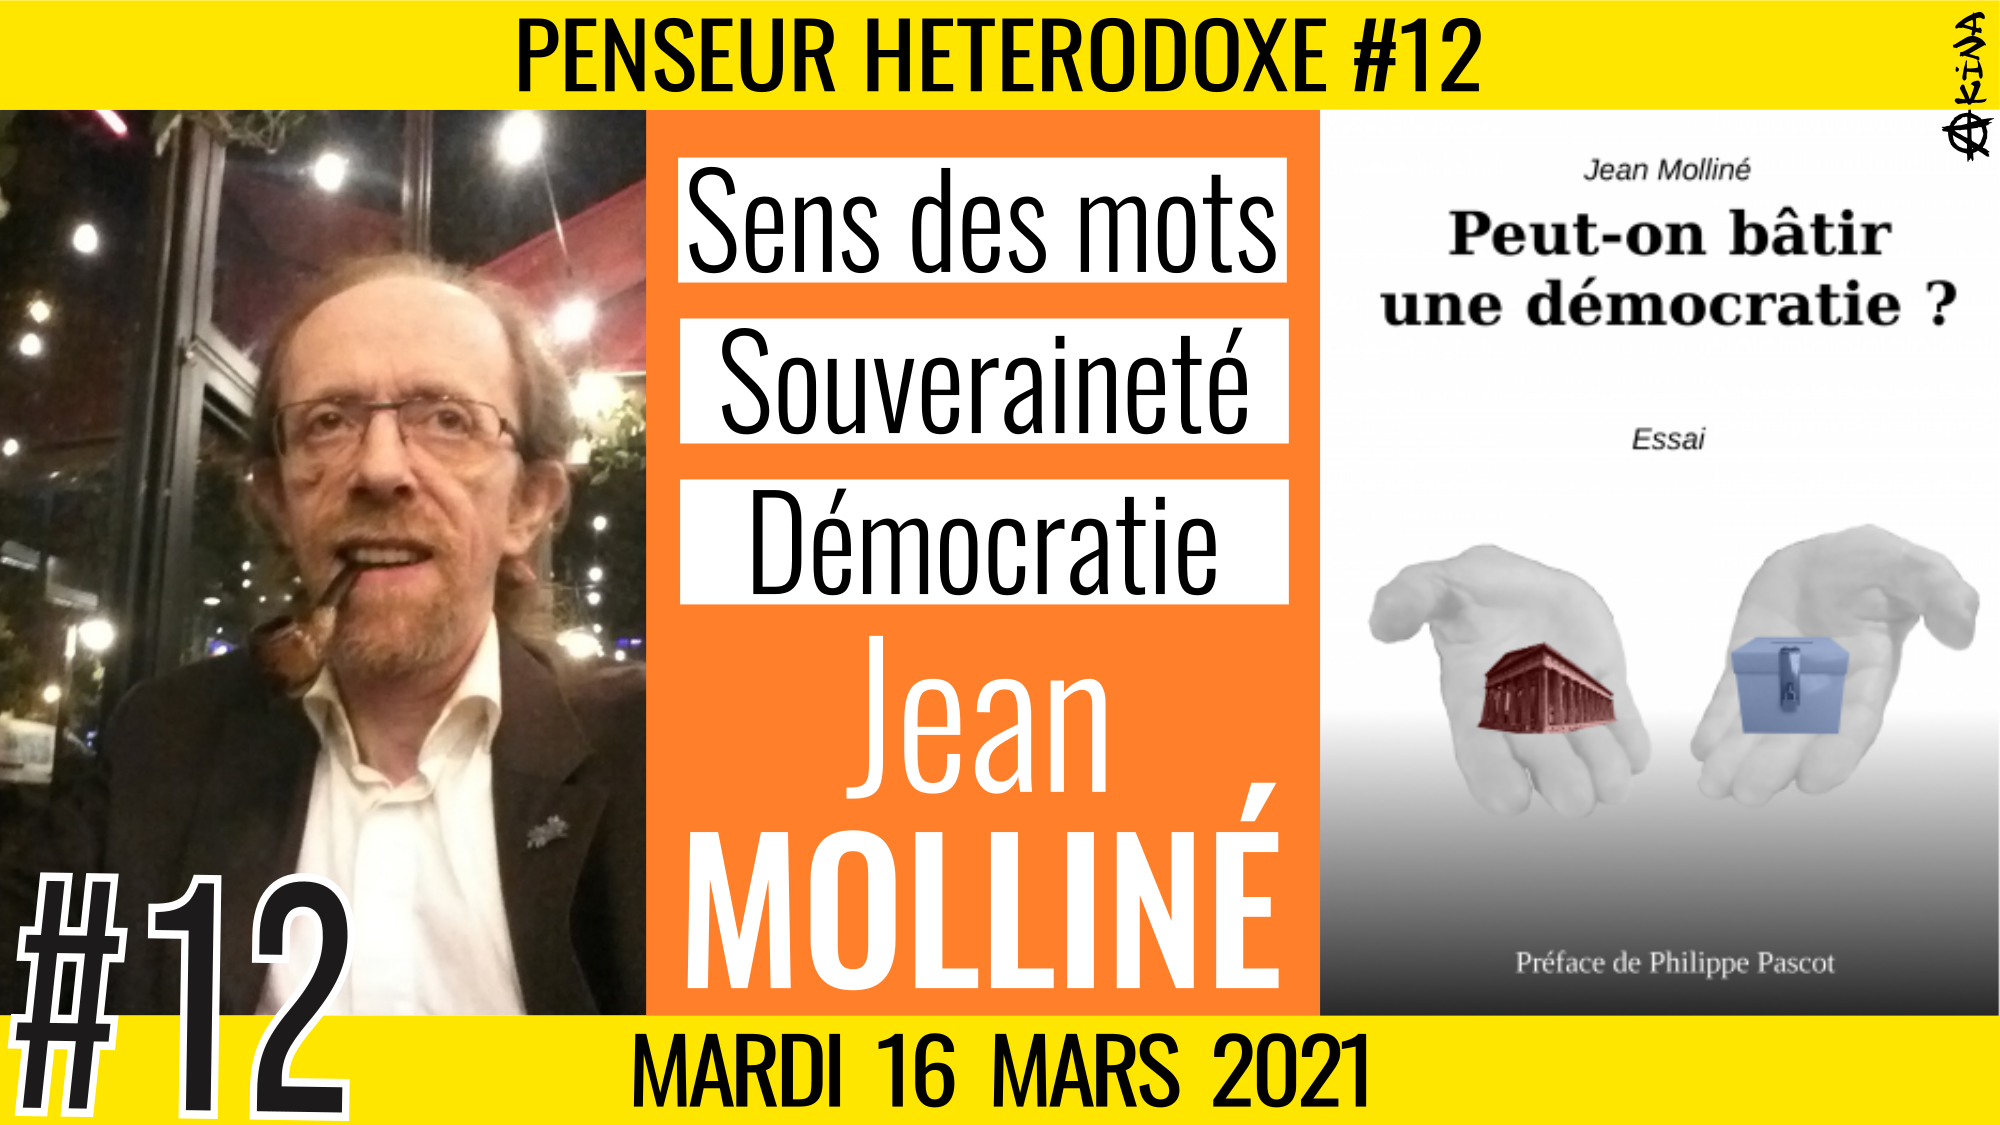 💡PENSEUR HÉTÉRODOXE #12 🗣 Jean MOLLINÉ 🎯 Sens des mots, Souveraineté, Démocratie 📆 16-03-2021